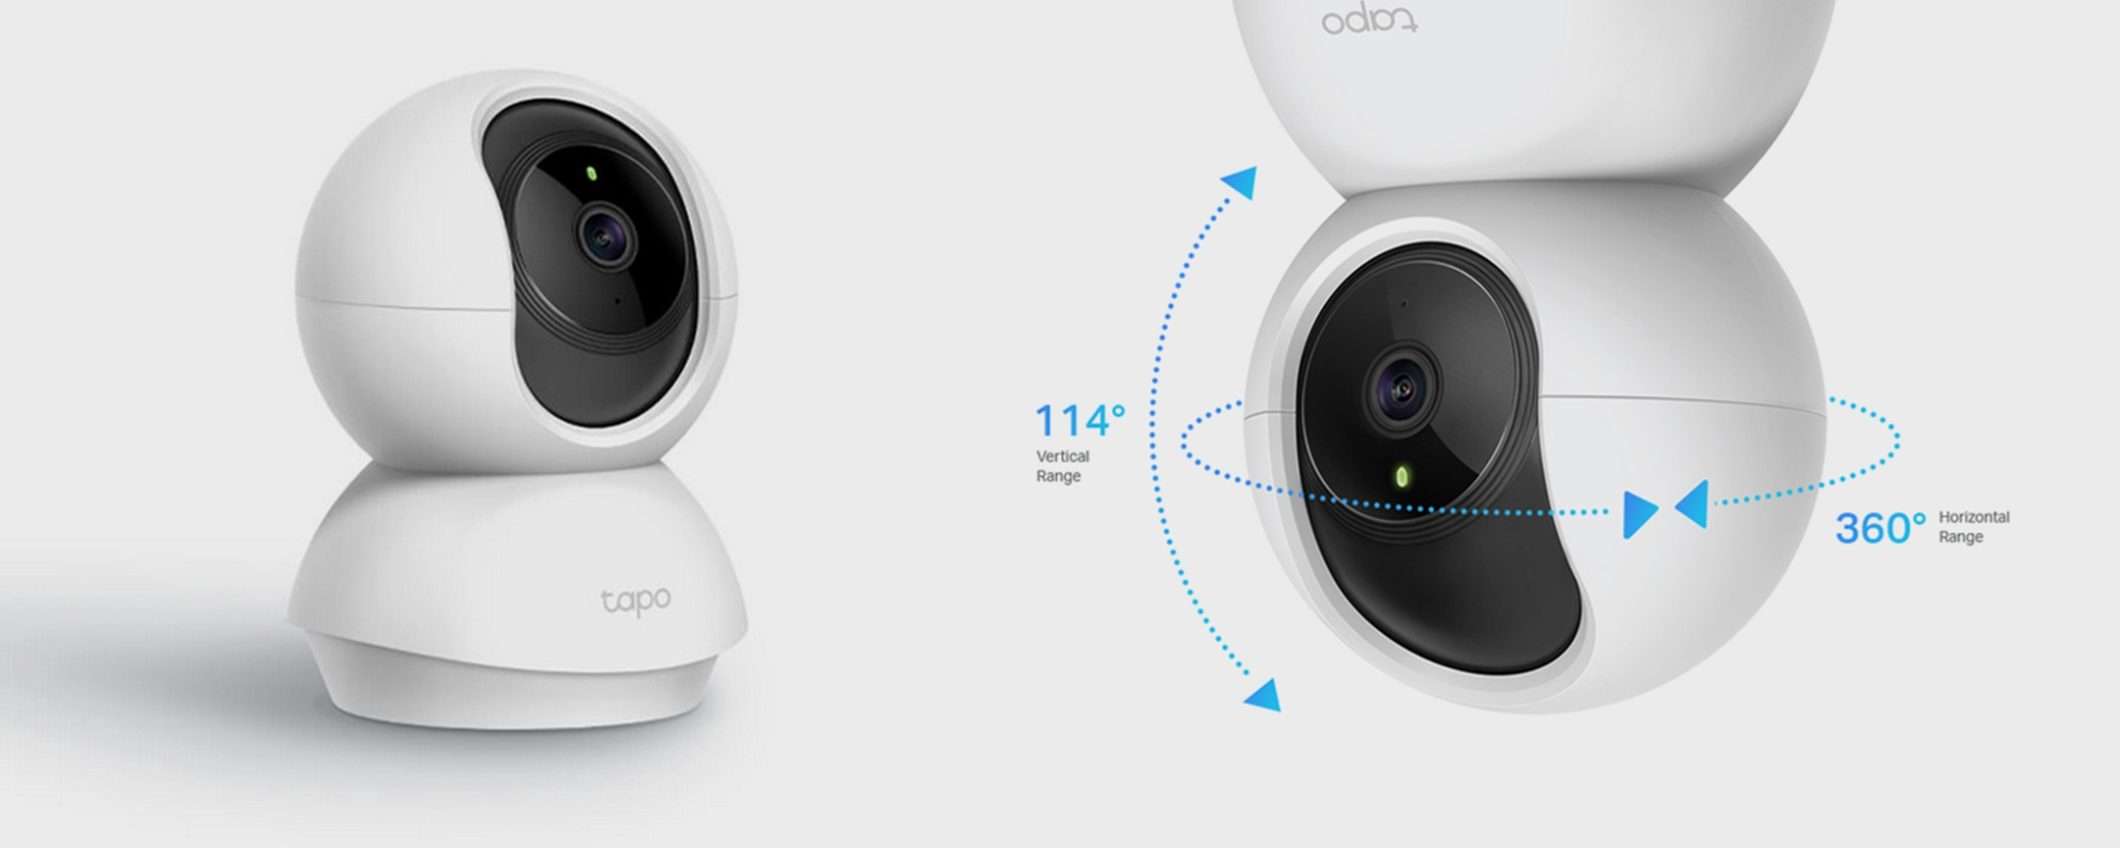 TP-Link Tapo C200: la splendida videocamera di sicurezza a soli 24€ su Amazon